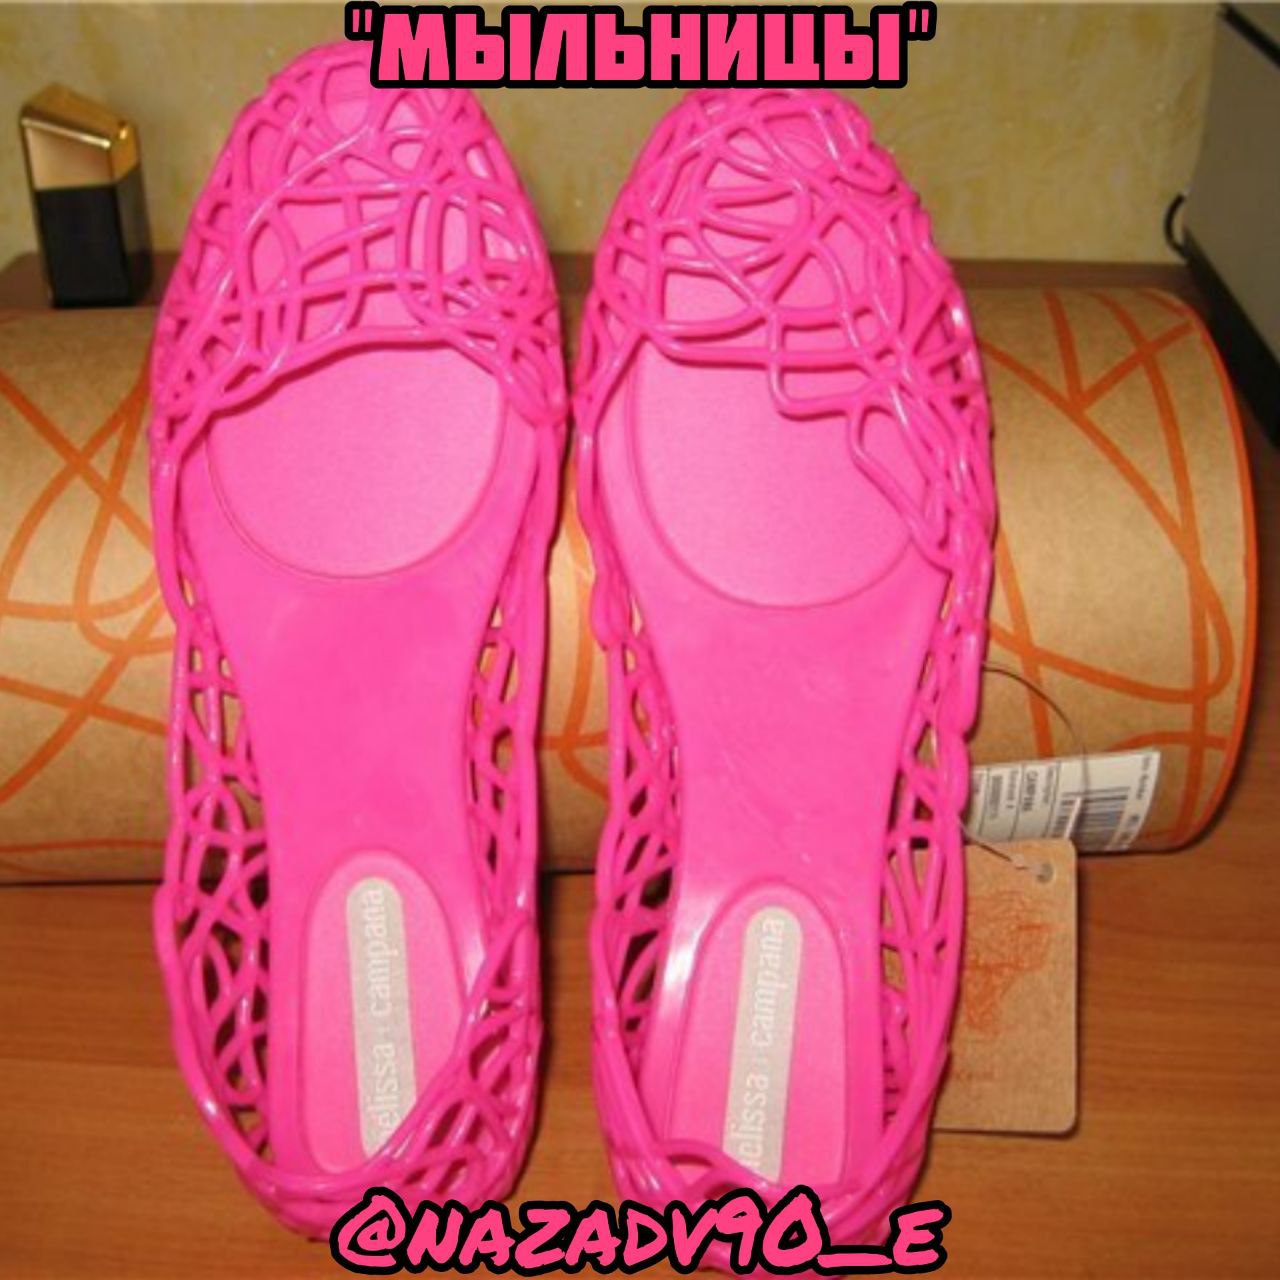 Советские мыльницы обувь